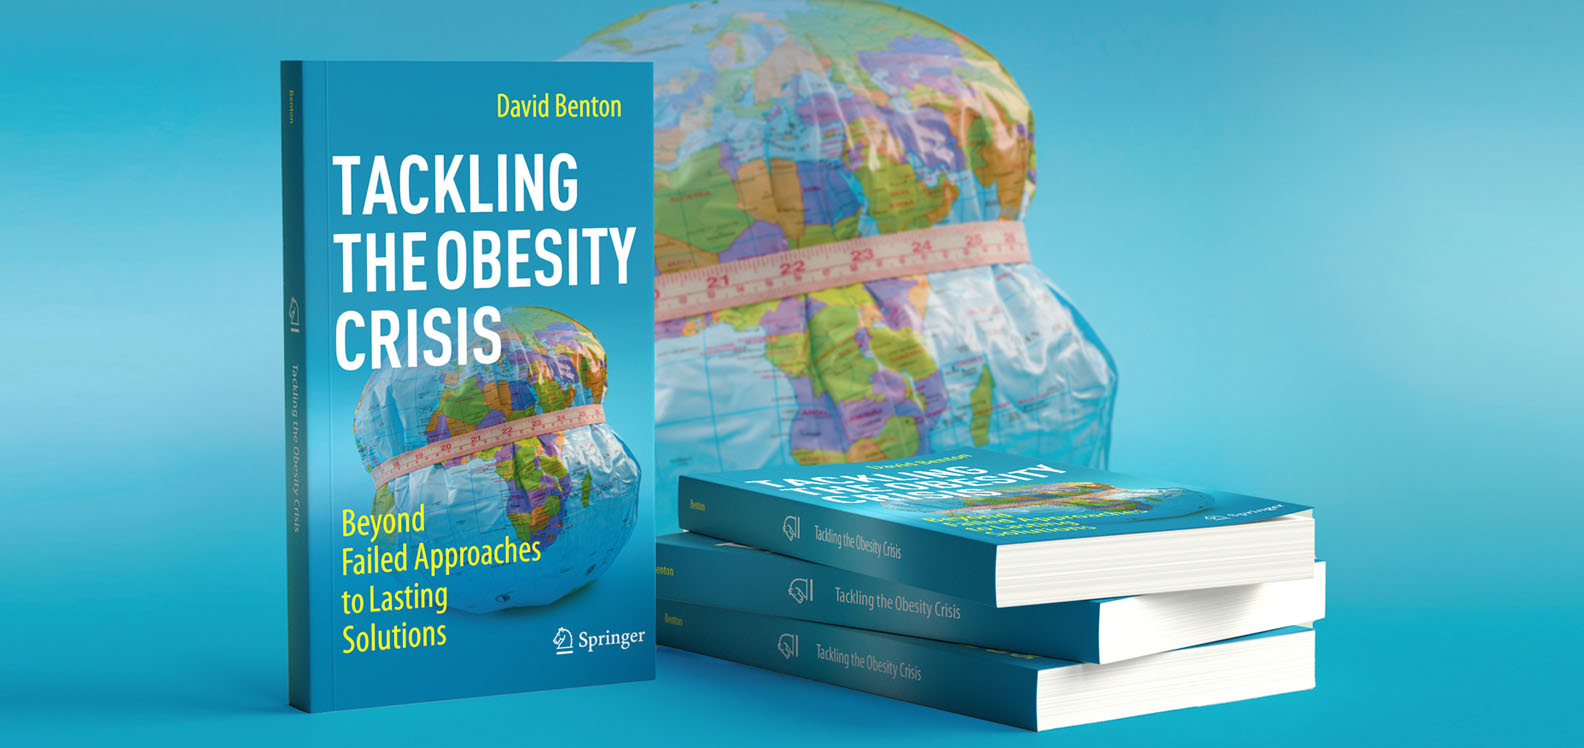 Copïau o lyfr newydd yr Athro David Benton, Tackling the Obesity Crisis: Beyond Failed Approaches to Lasting Solutions. Yn y cefndir, ceir graffigyn o glôb chwyddadwy sydd â thâp mesur o'i amgylch.